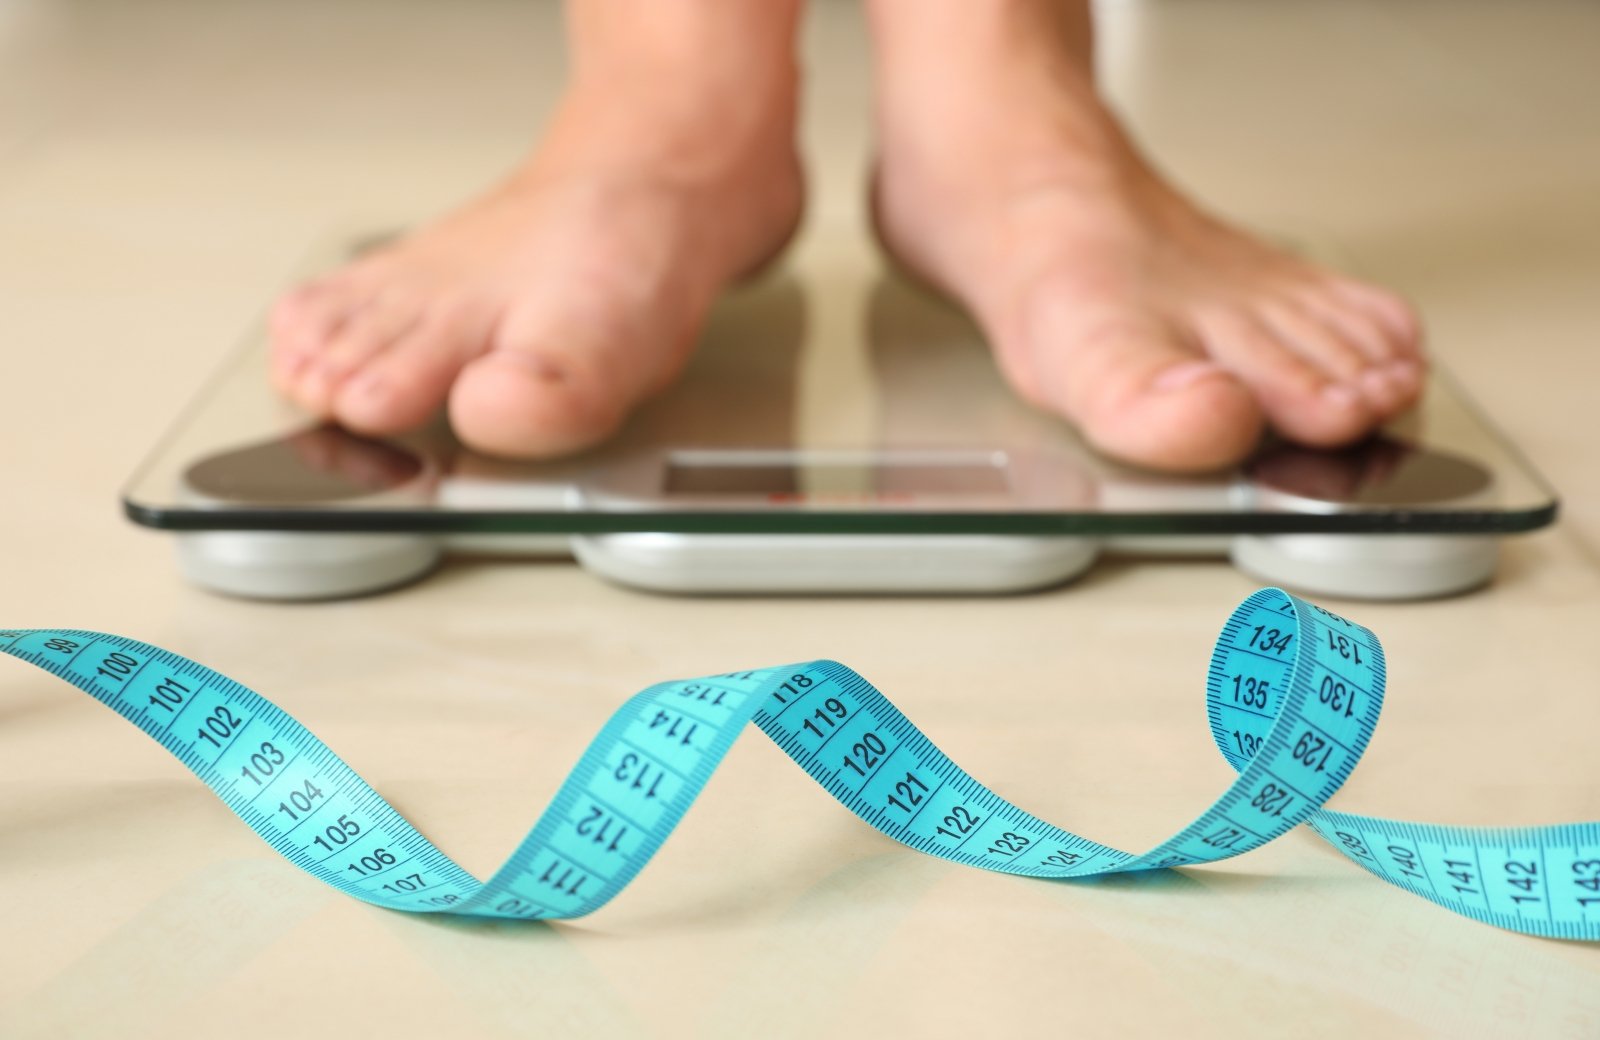 natūraliausias būdas greitai numesti svorį yra protinės išrūgos skirtos svorio metimui